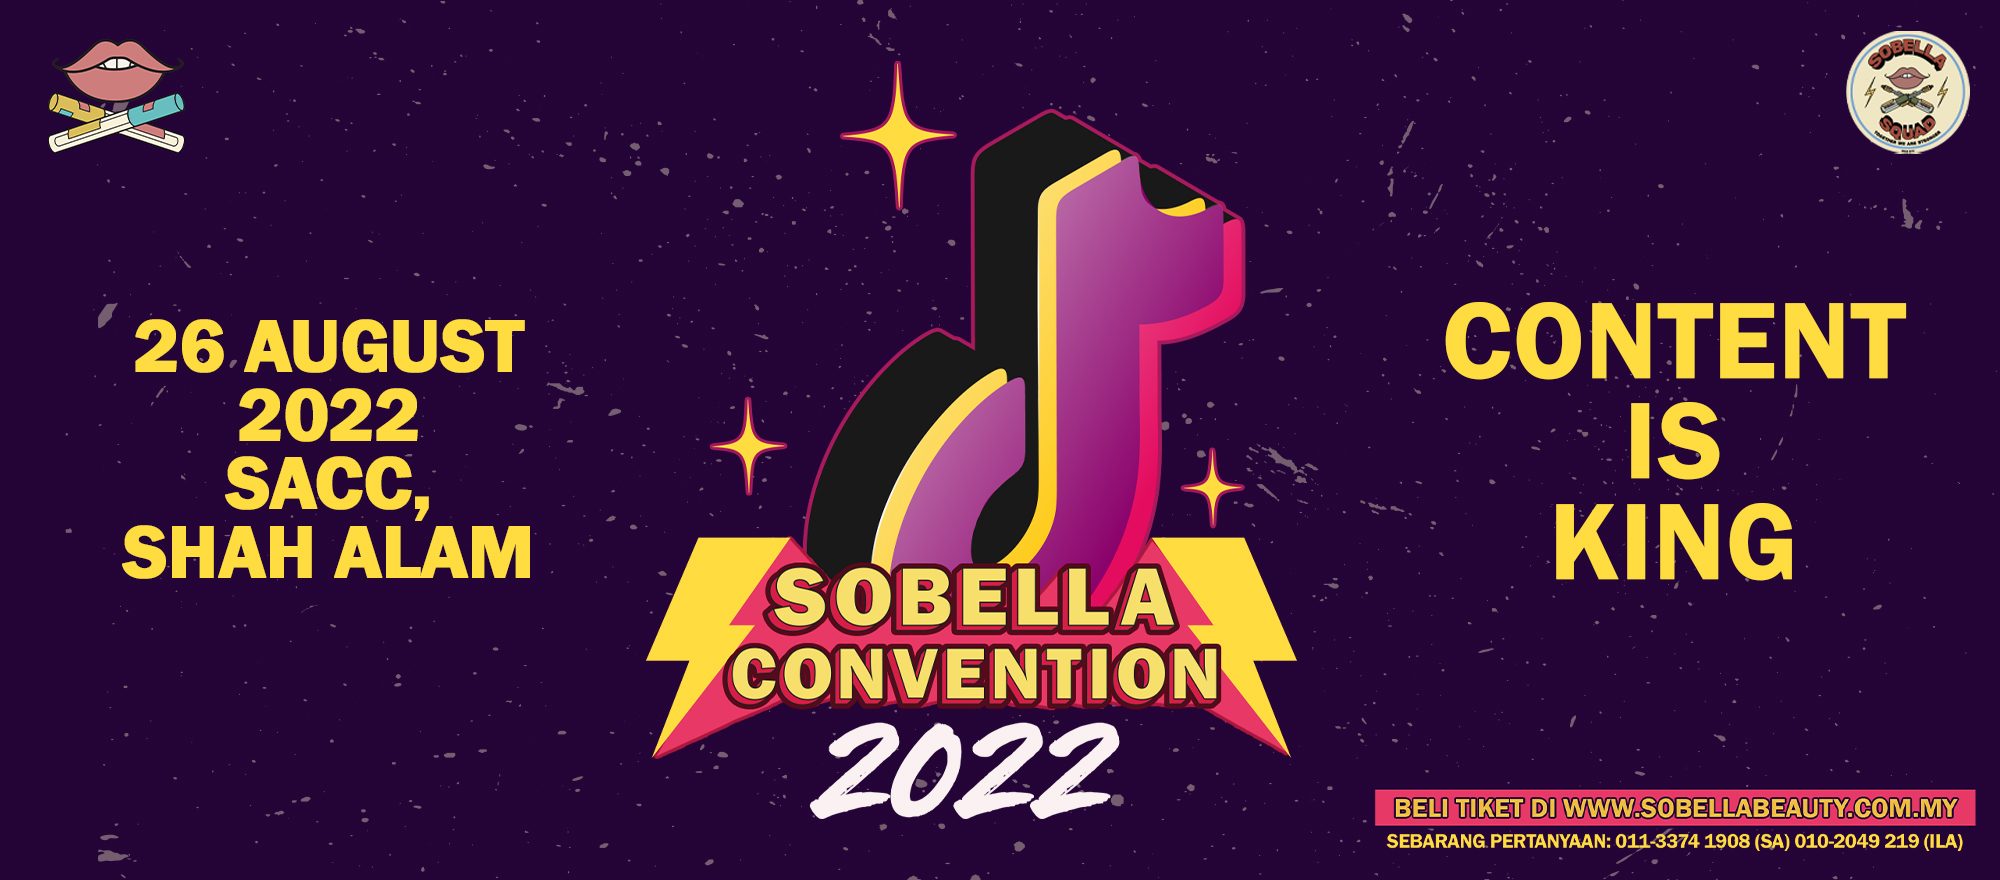 SOBELLA CONVENTION 2022